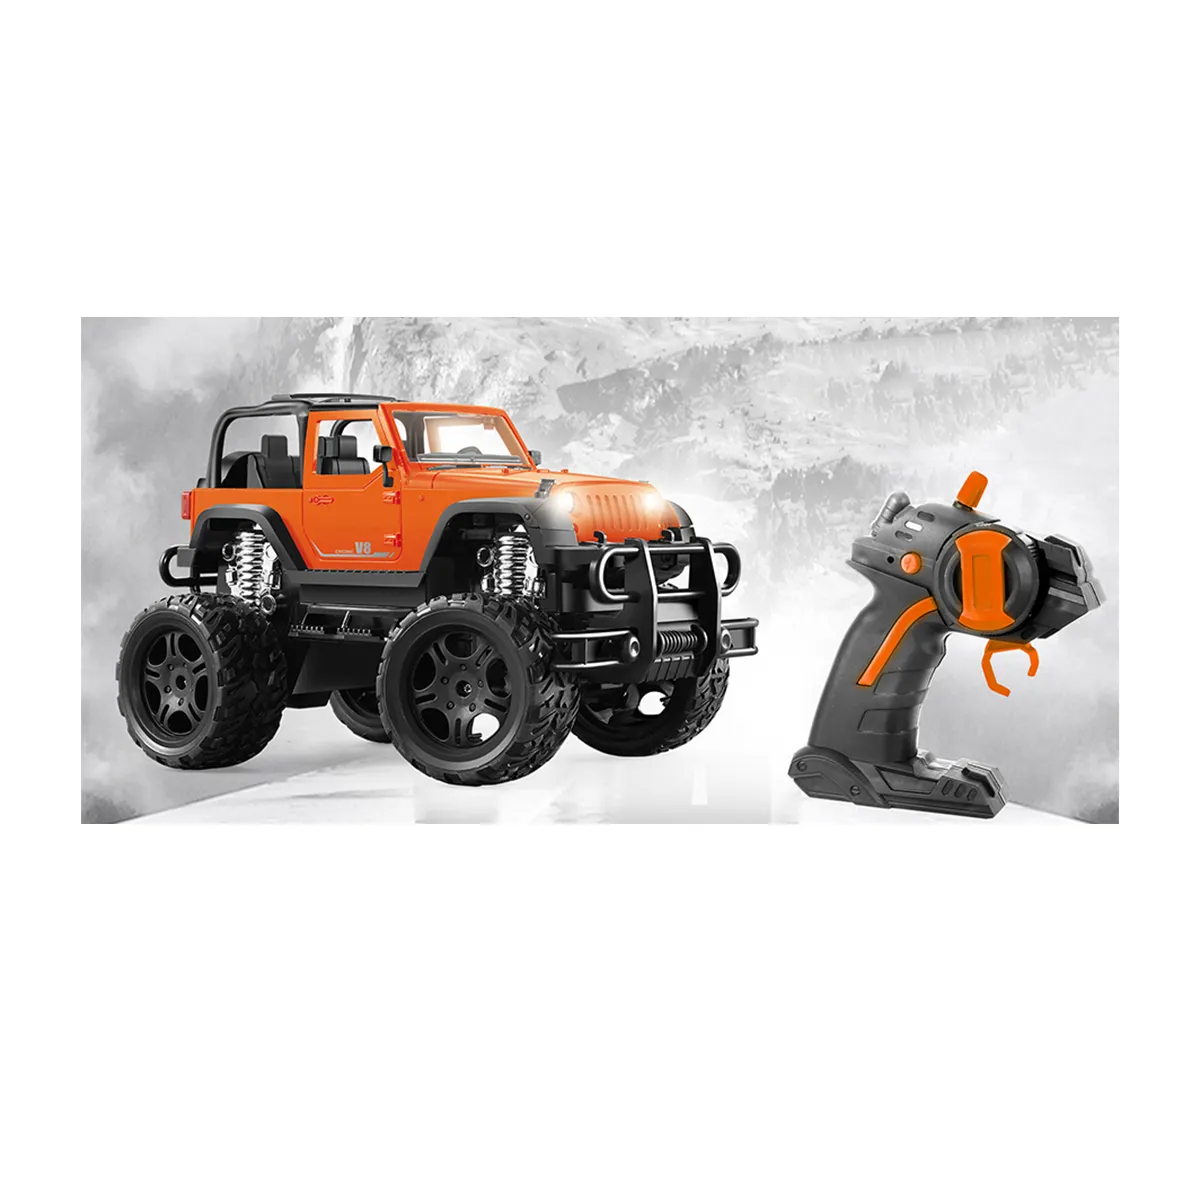 LONGXI rc автомобиль джип с дистанционным управлением внедорожные радиоуправляемые автомобили и грузовики 4x4 Электрический монстр грузовик игрушечный Радиоуправляемый автомобиль для детей